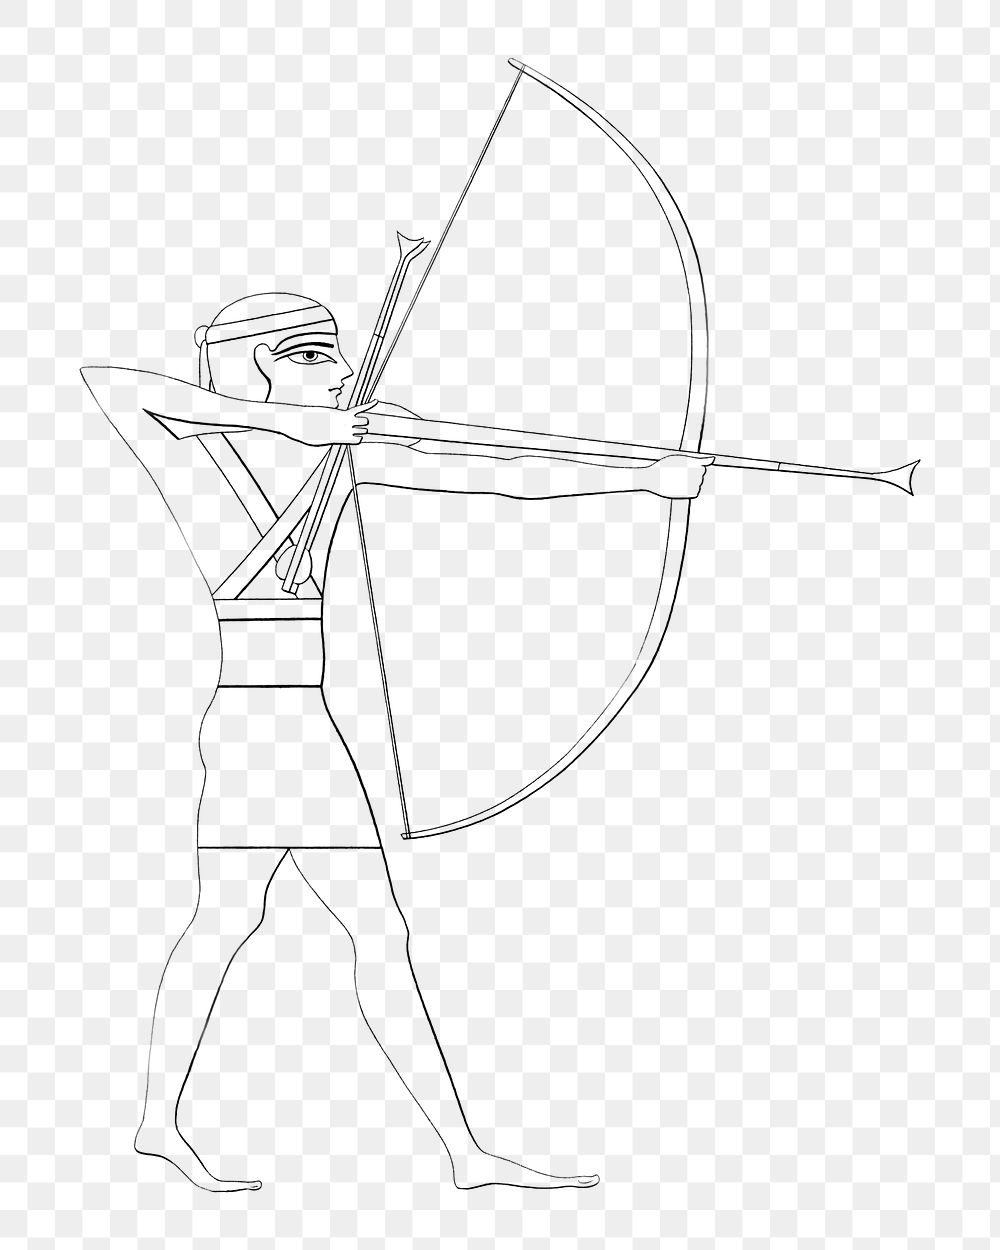 Human archer png vintage illustration, Egyptian design on transparent background